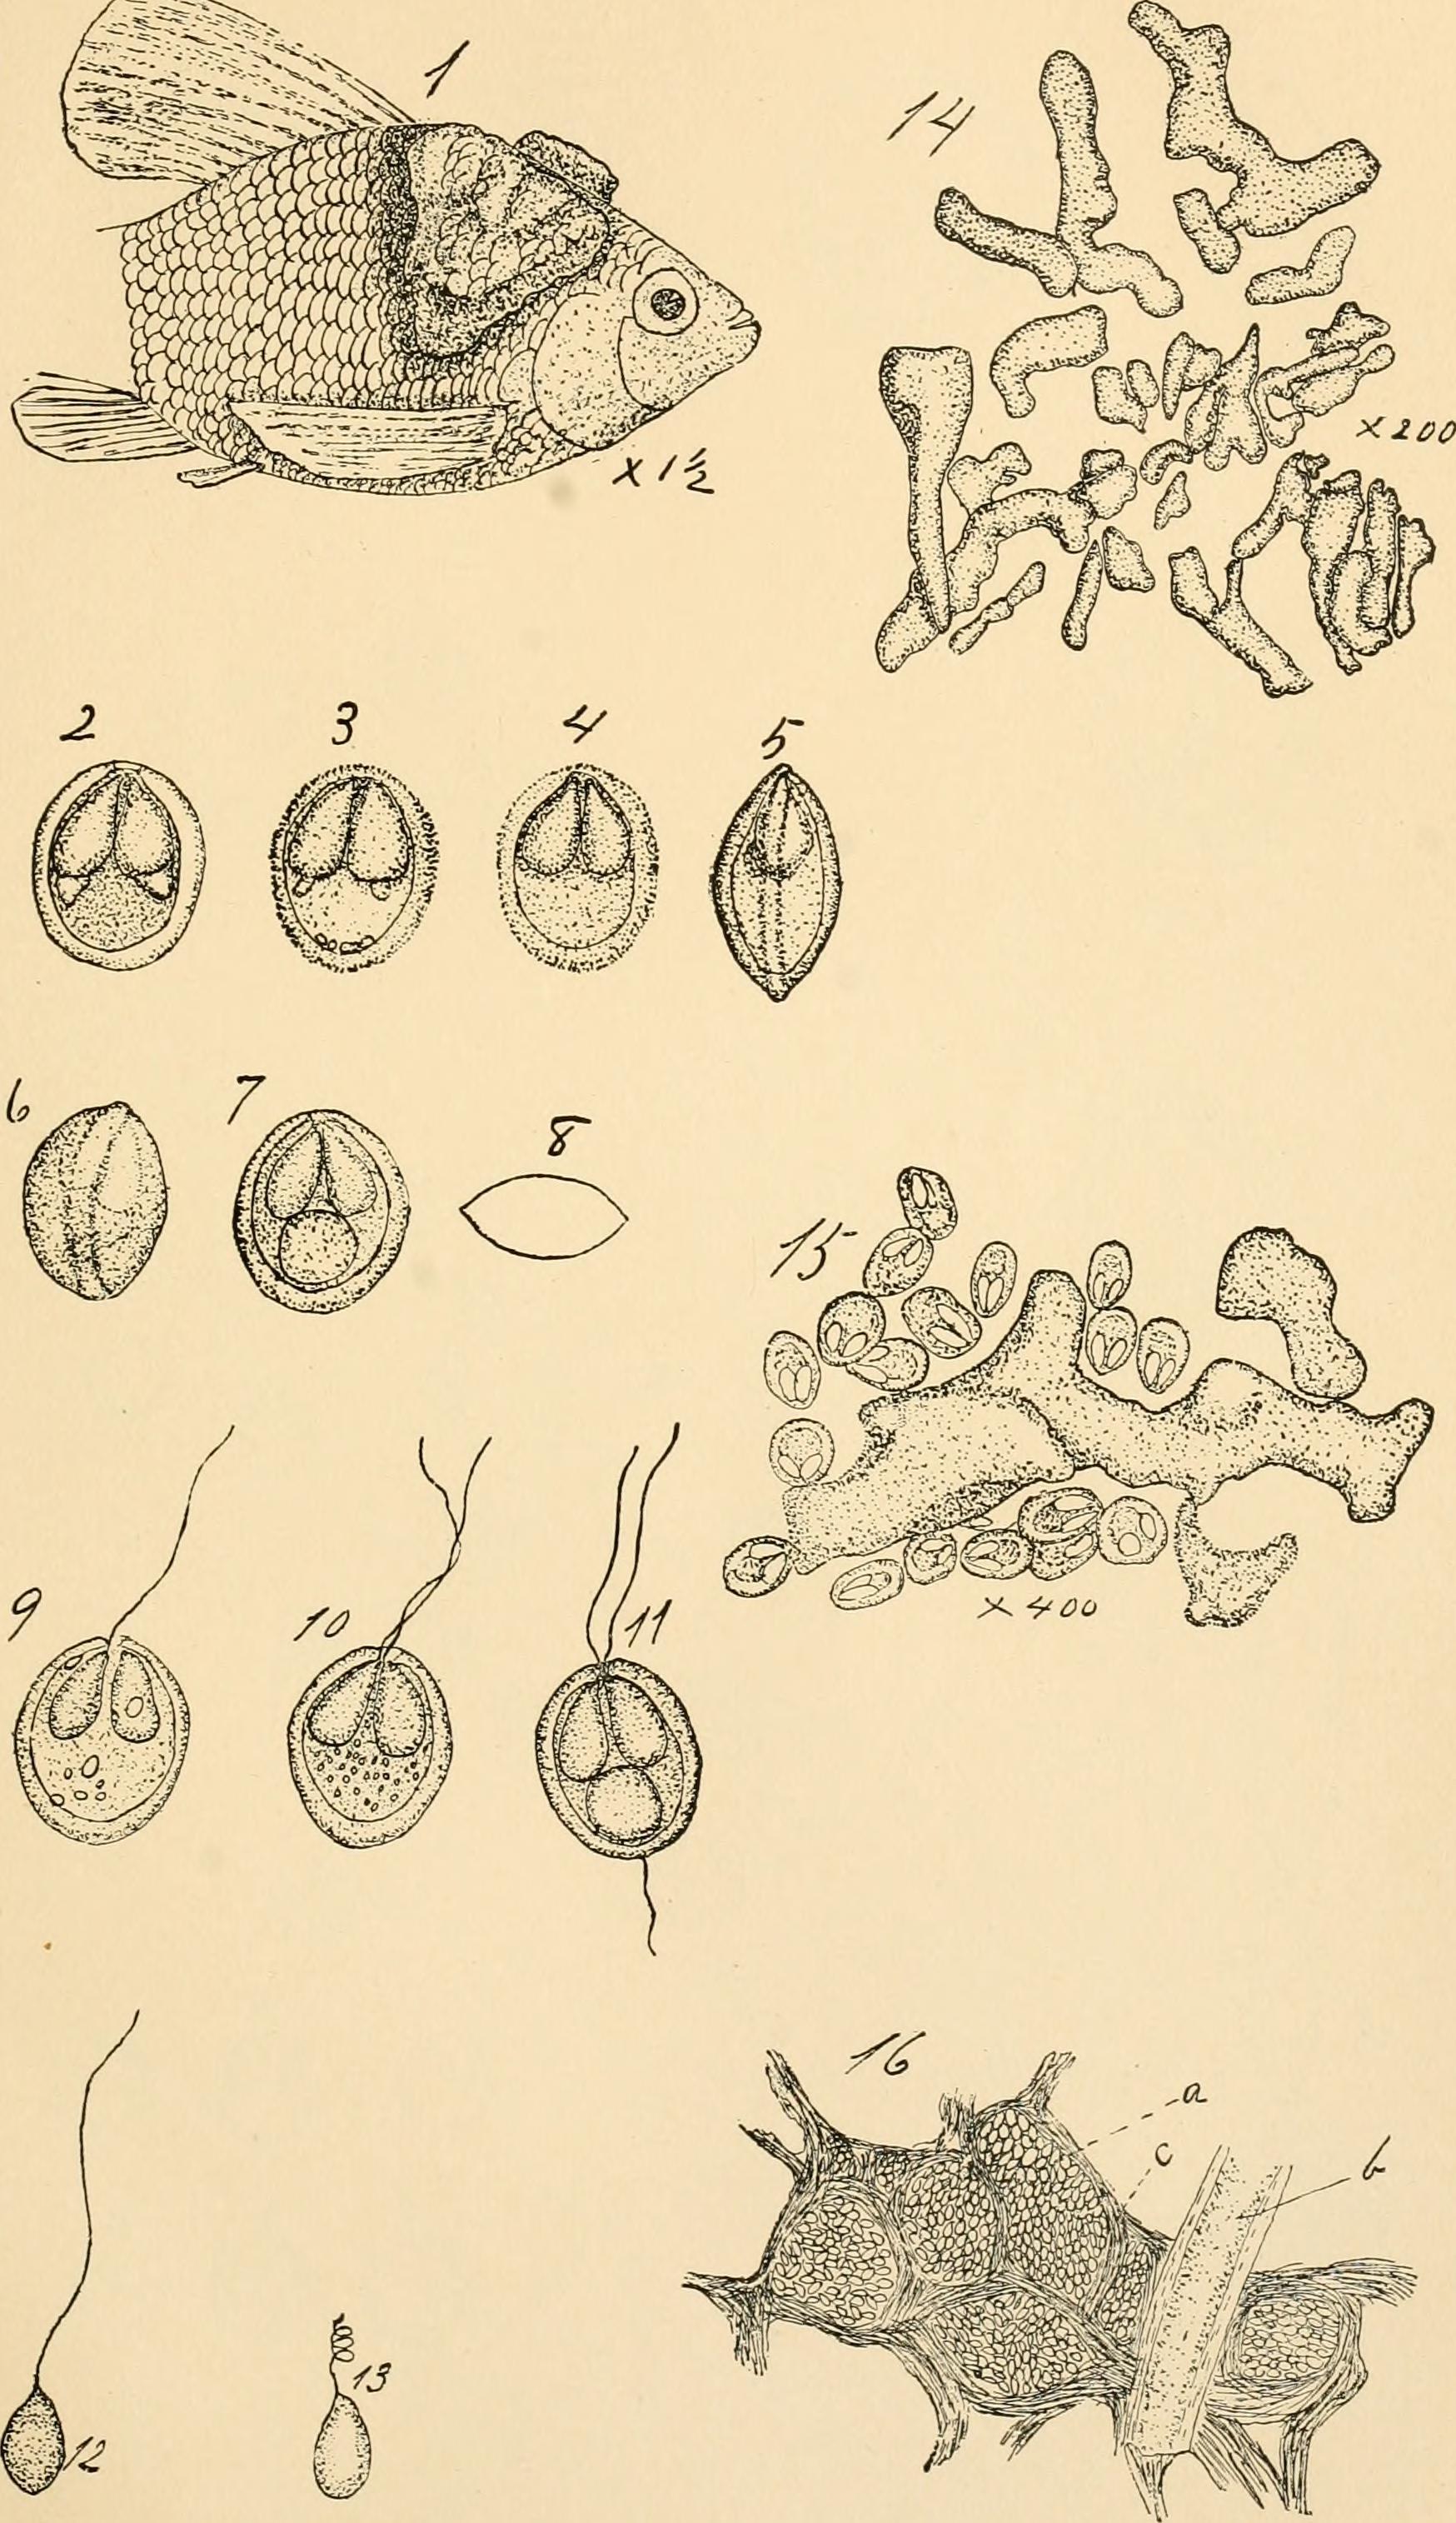 Image of myxosporean parasites